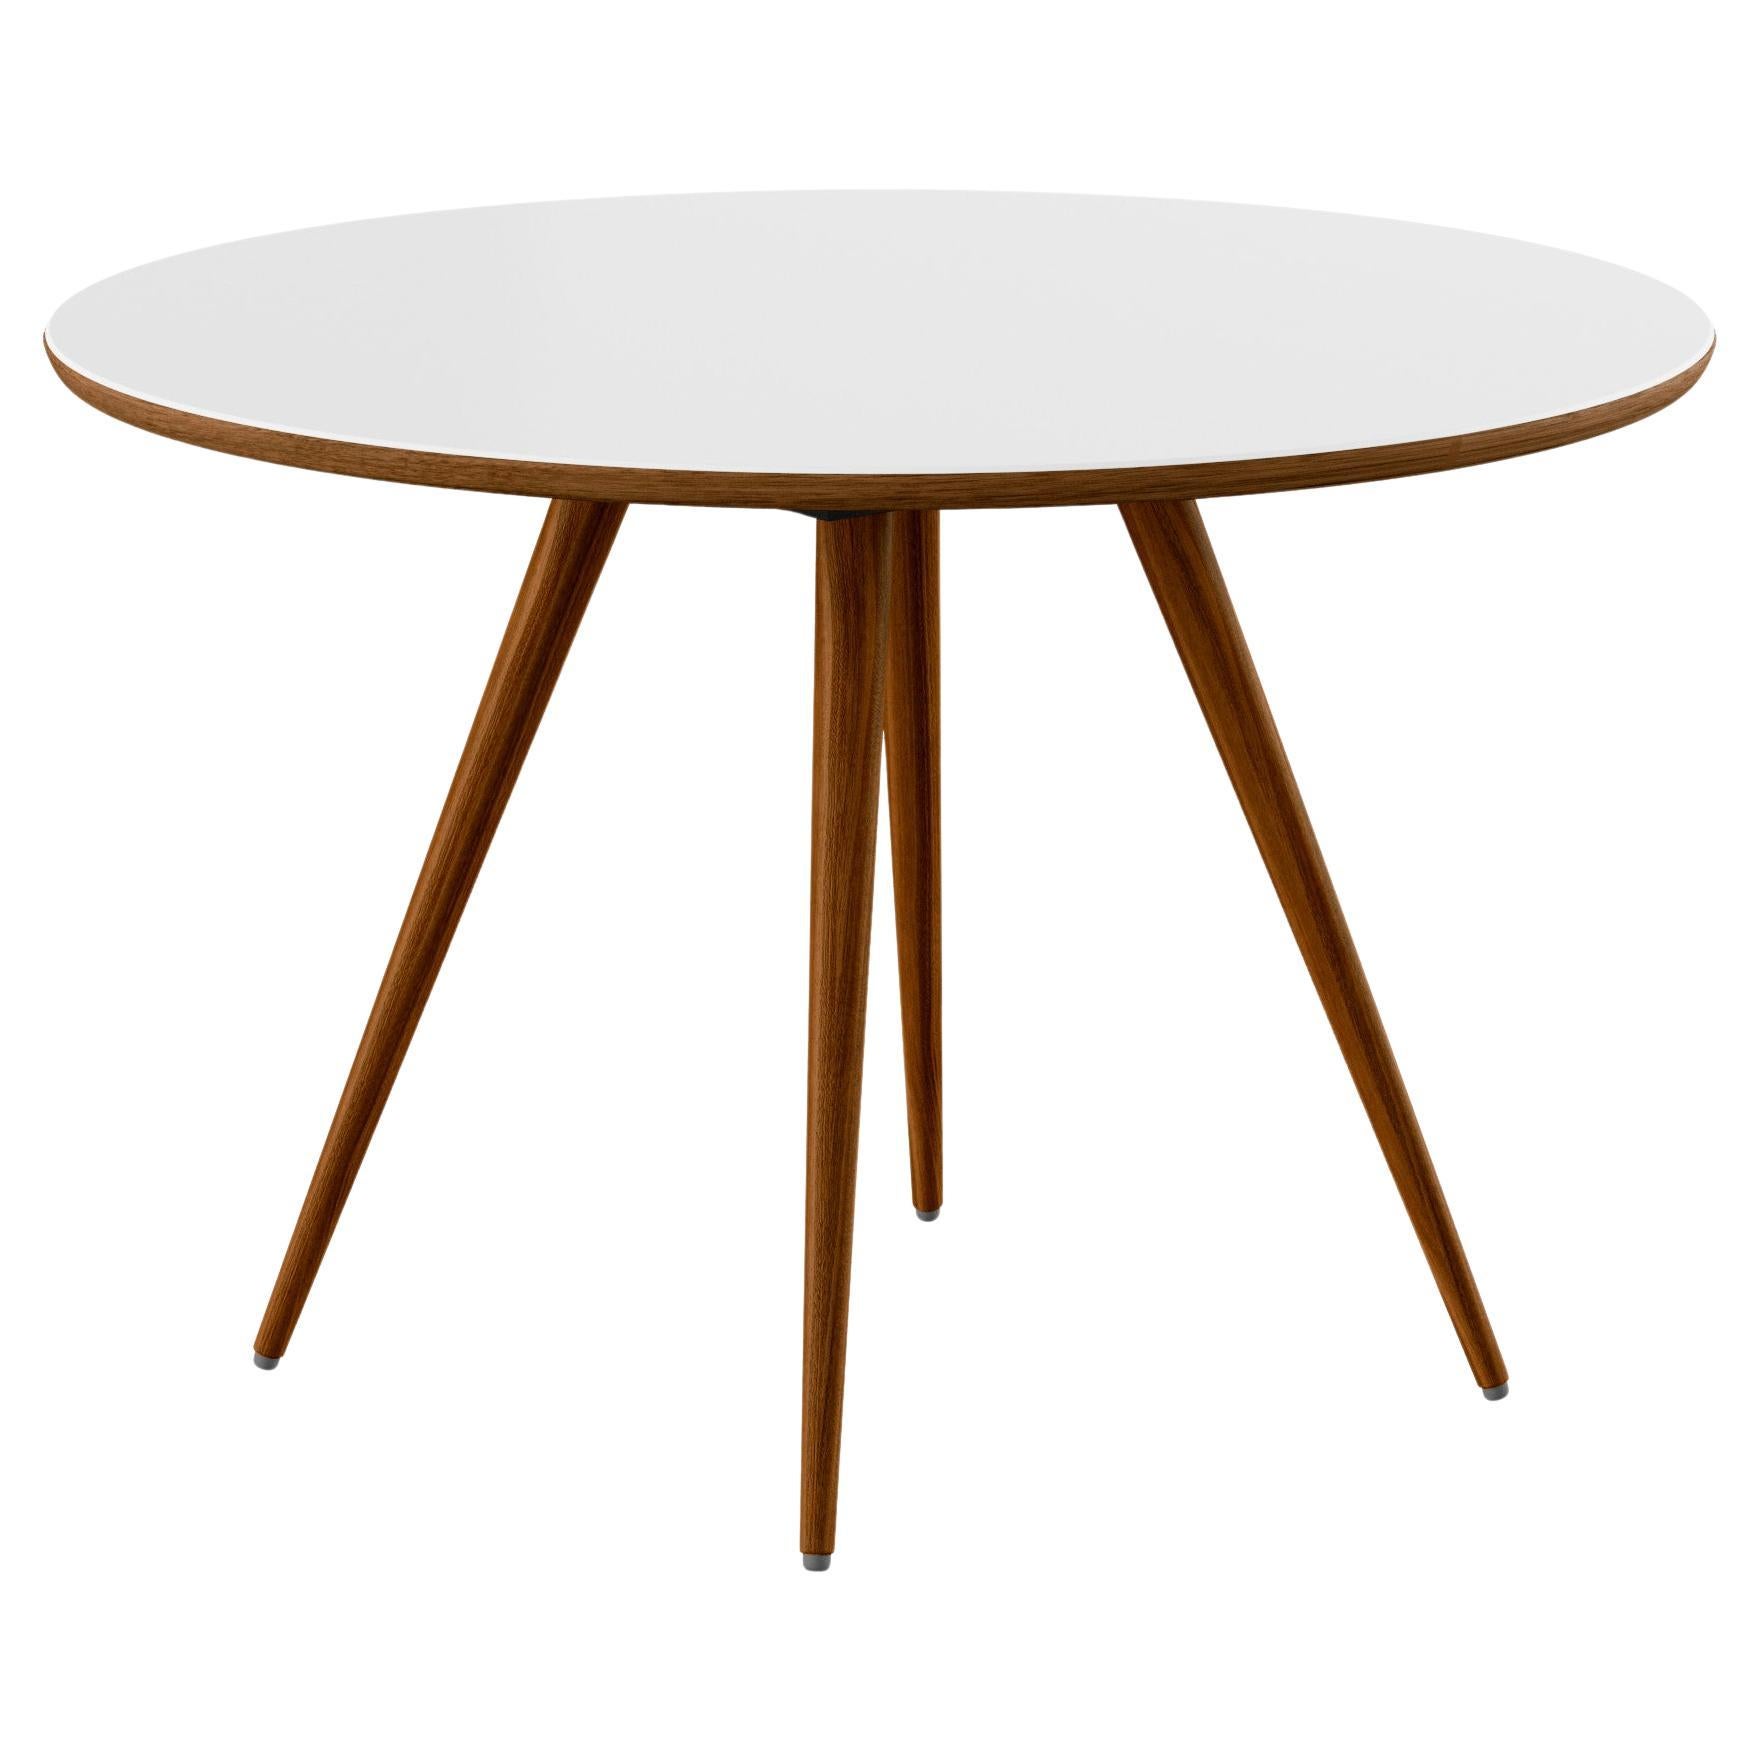 GM3900 Edge Round Table, Walnut, White Corian - Design by Nissen & Gehl MDD For Sale